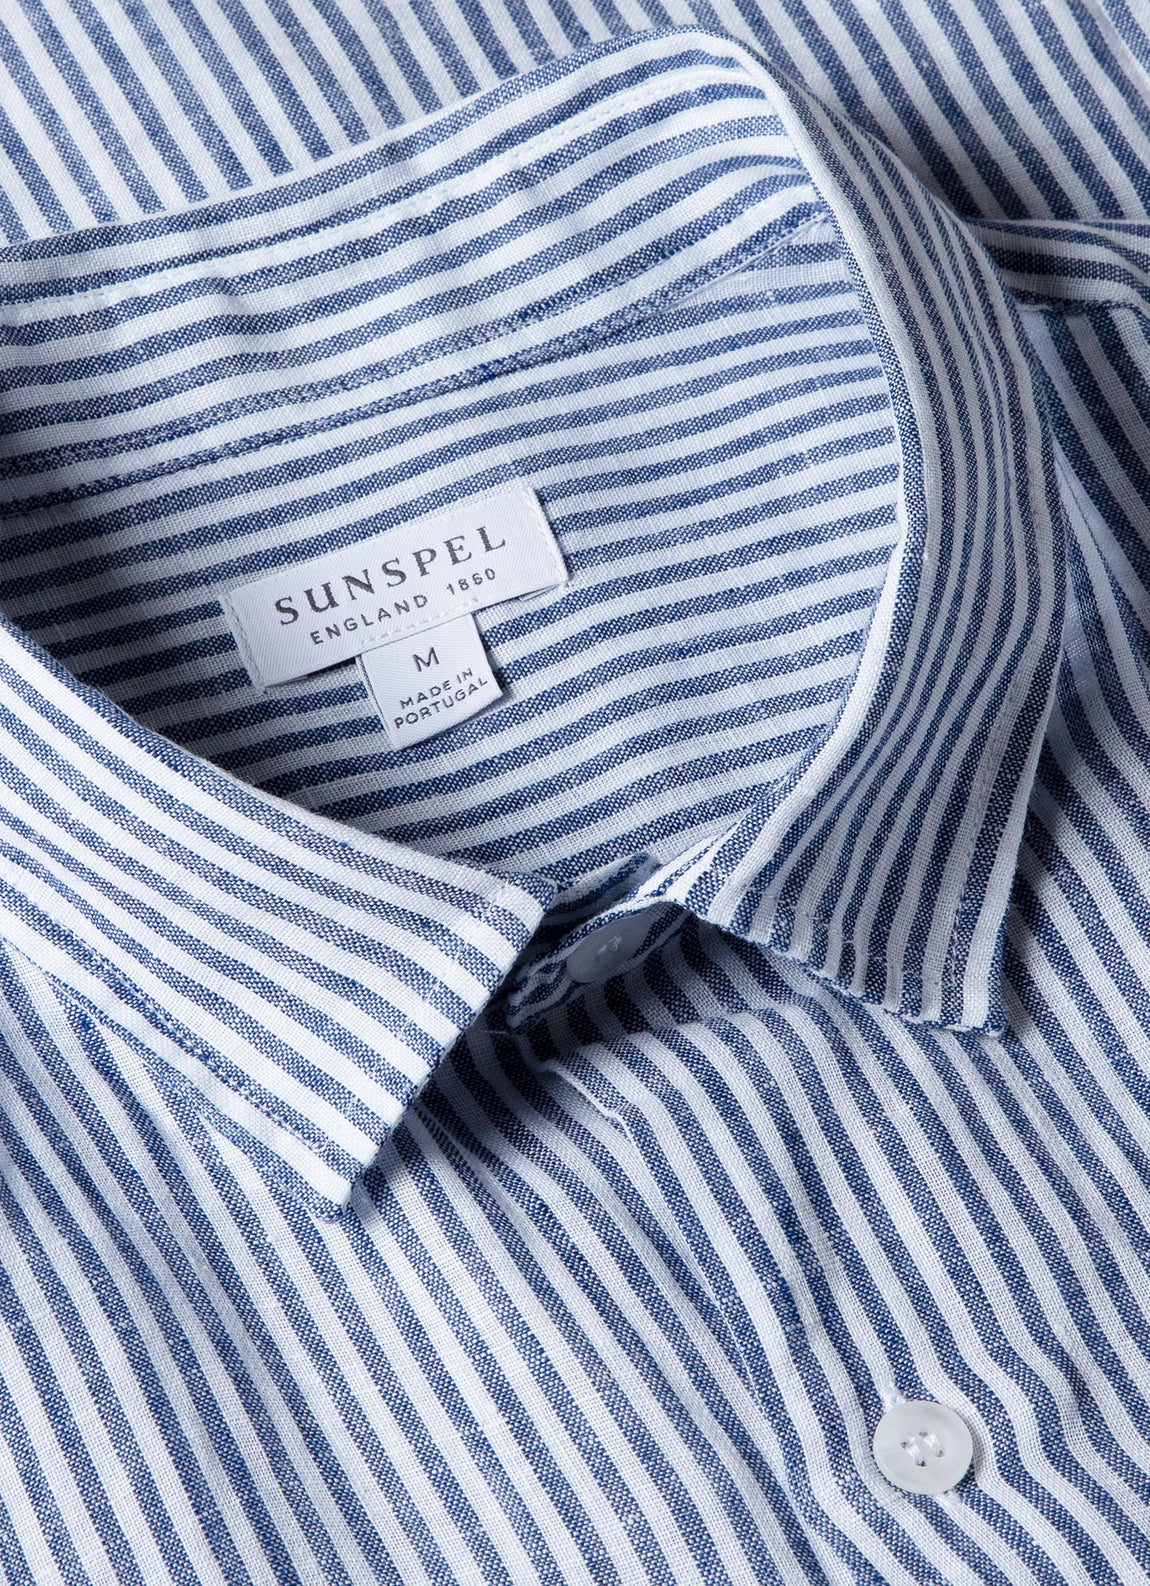 Men's Short Sleeve Linen Shirt in Navy/White Stripe | Sunspel